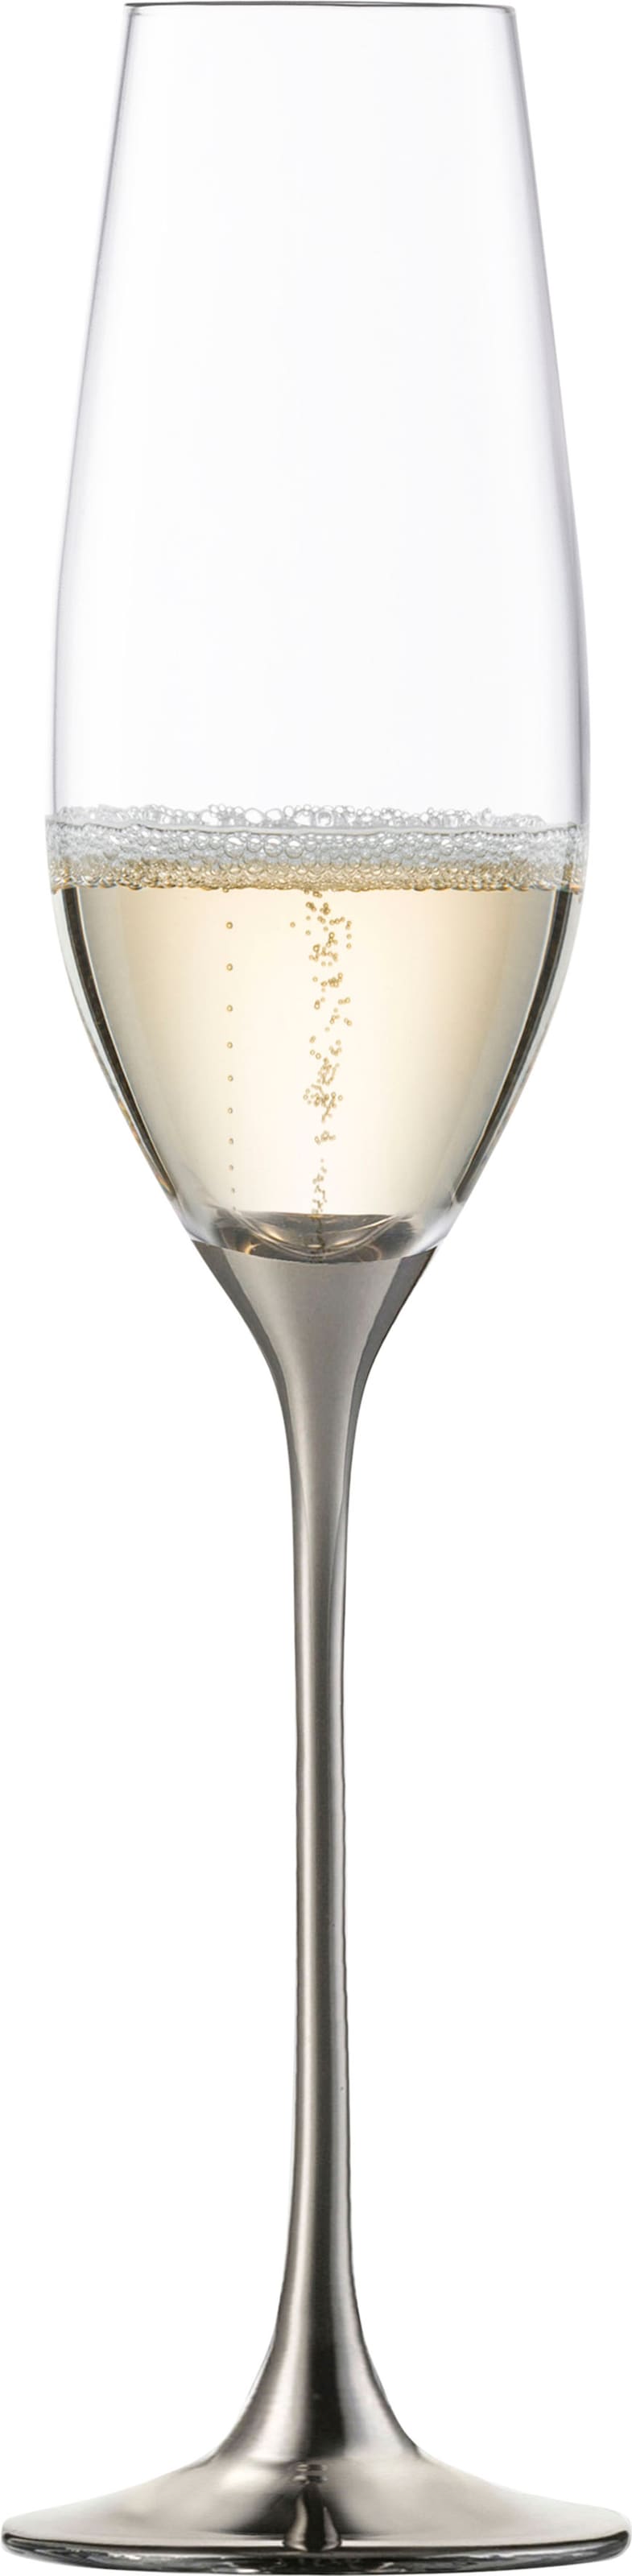 Eisch Sektglas »Champagner Exklusiv«, (Set, 2 tlg.), Auflage in Platin, 180 ml, 2-teilig